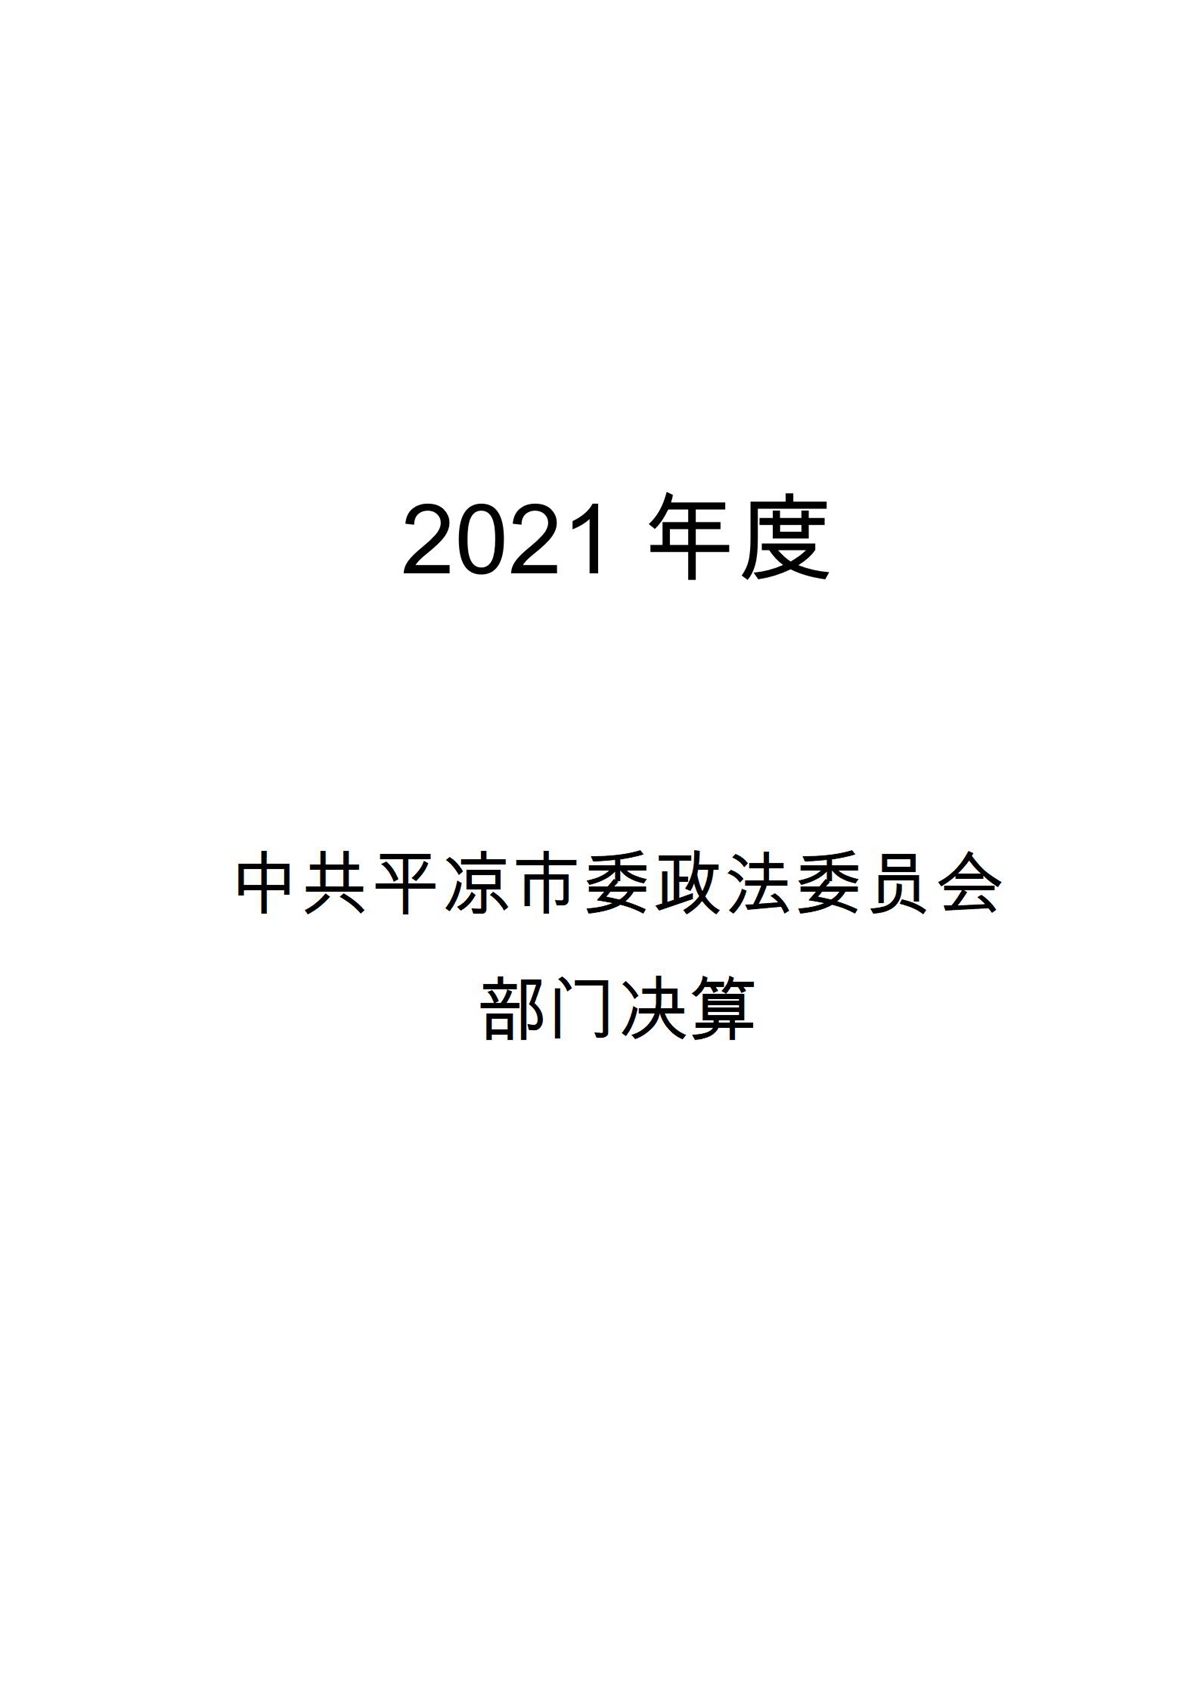 2021年度市委政法委部门决算_01.jpg